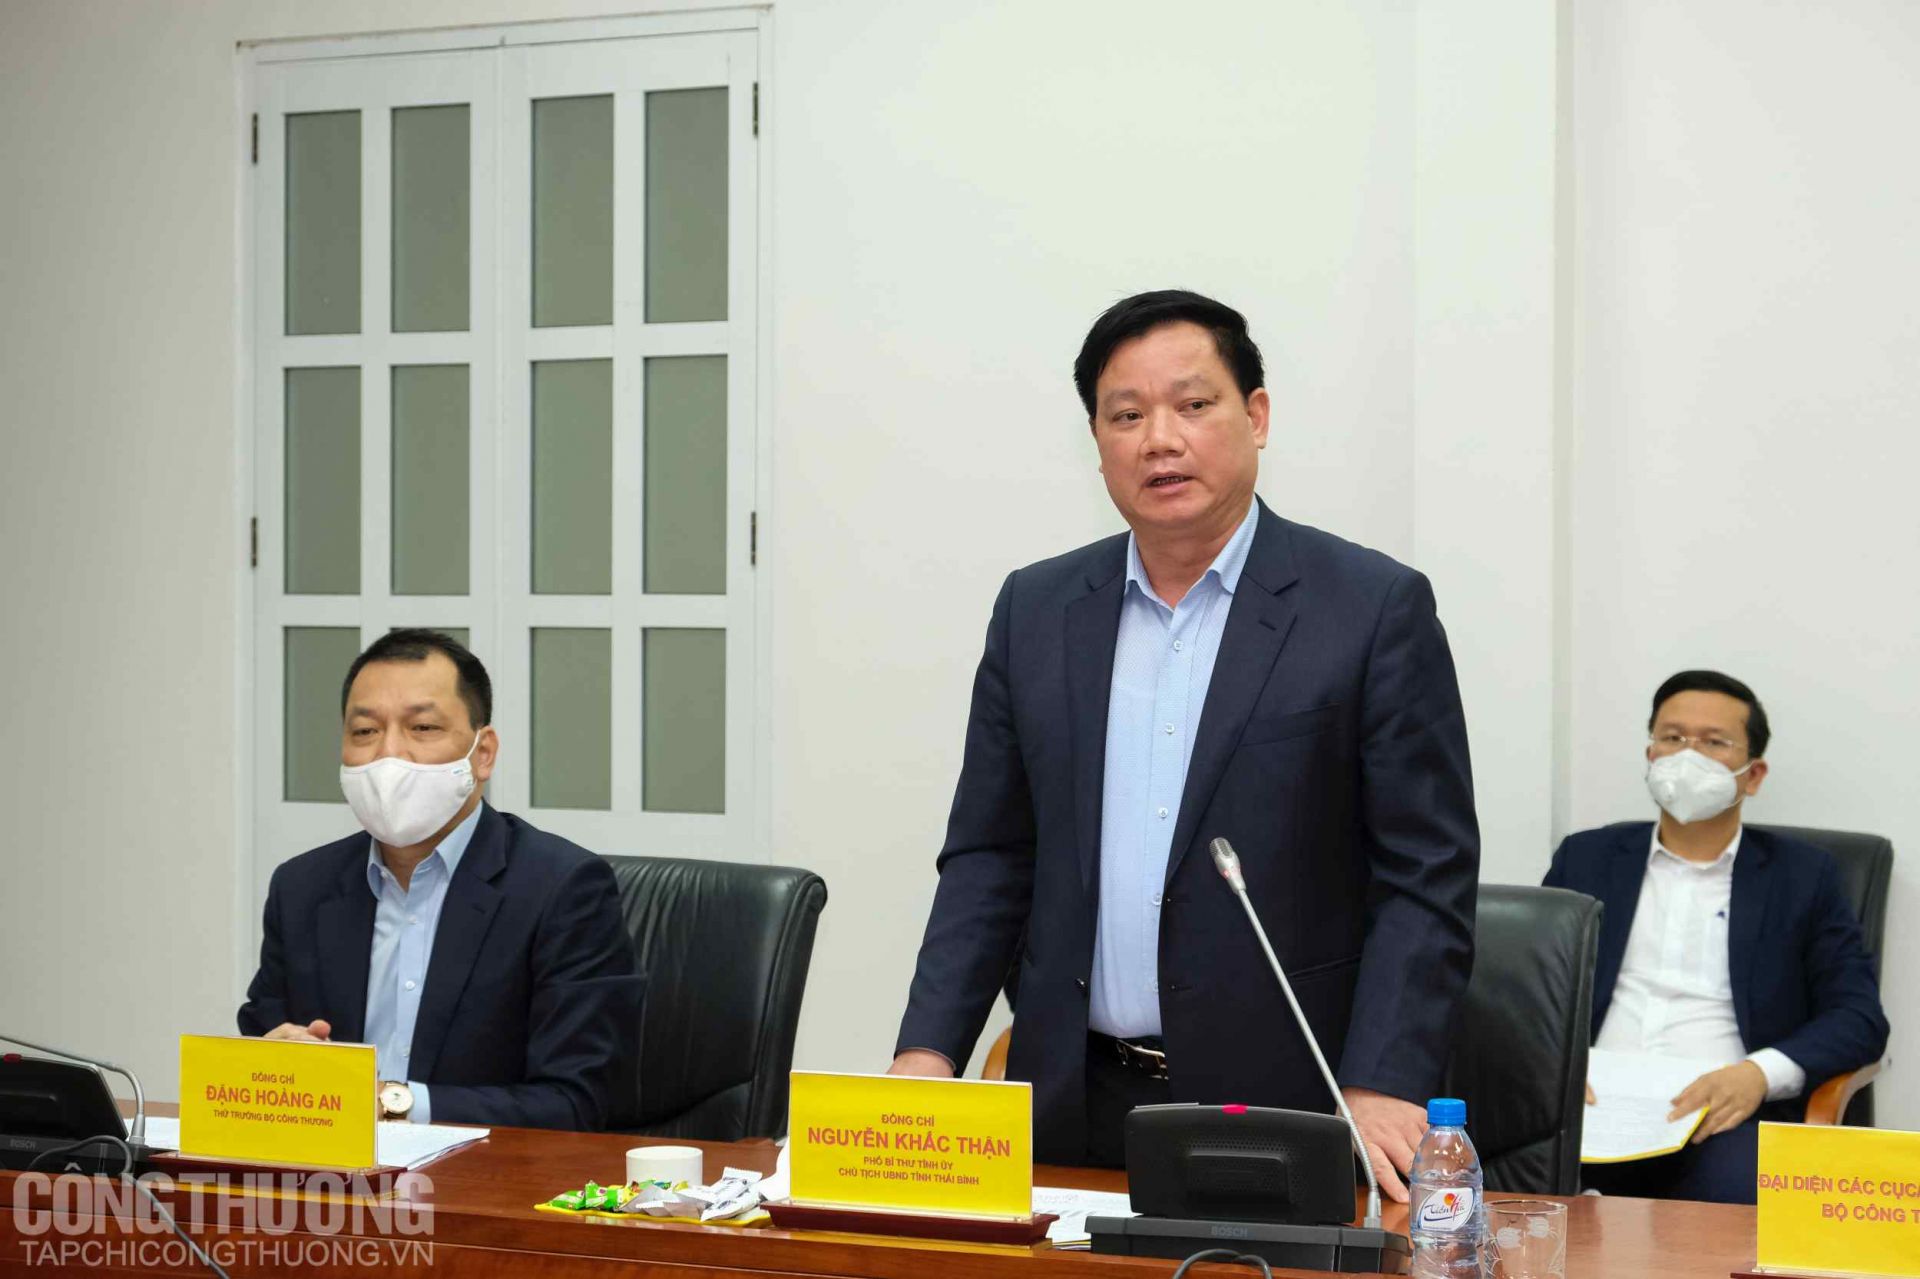 Ông Nguyễn Khắc Thận - Phó Bí thư Tỉnh ủy, Chủ tịch UBND tỉnh Thái Bình khẳng định địa phương đang tạo điều kiện tối đa để Nhiệt điện Thái Bình 2 cán đích trong năm 2022 theo đúng tiến độ